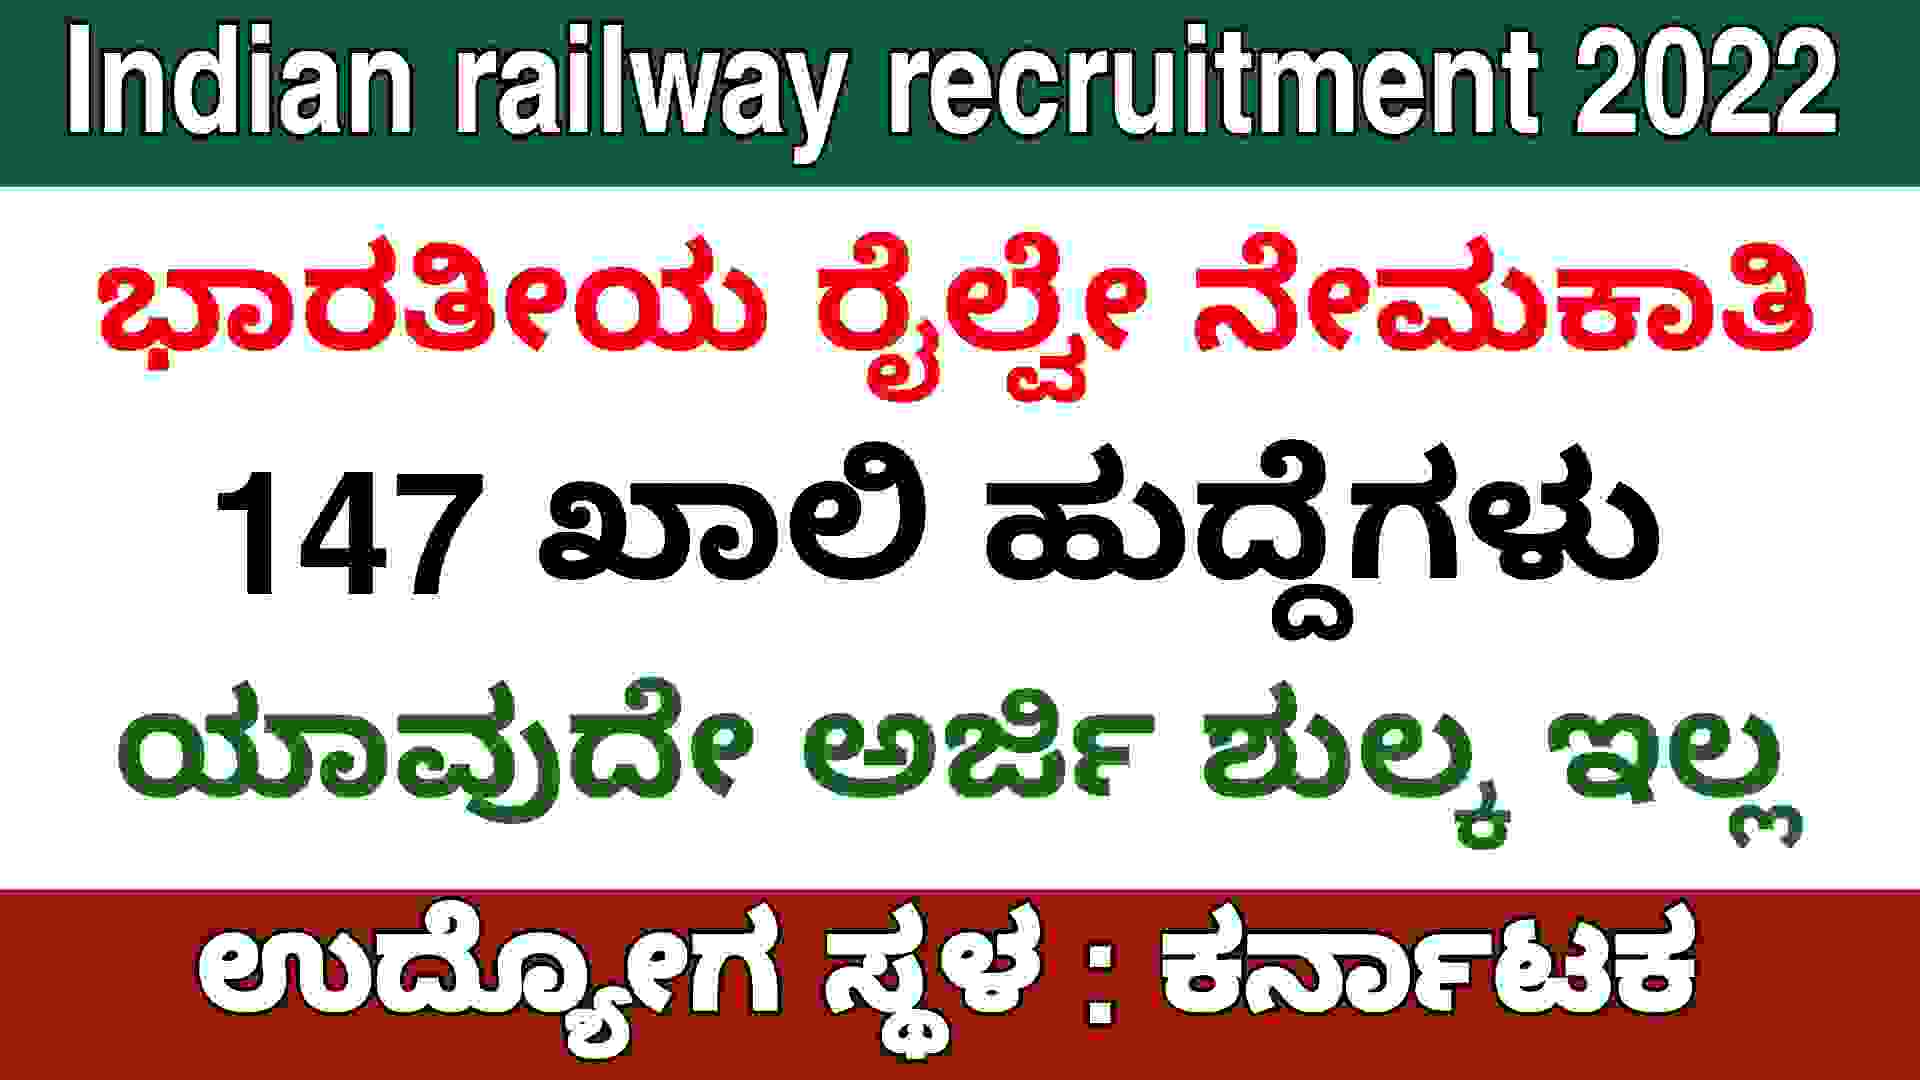 Indian railway recruitment 2022